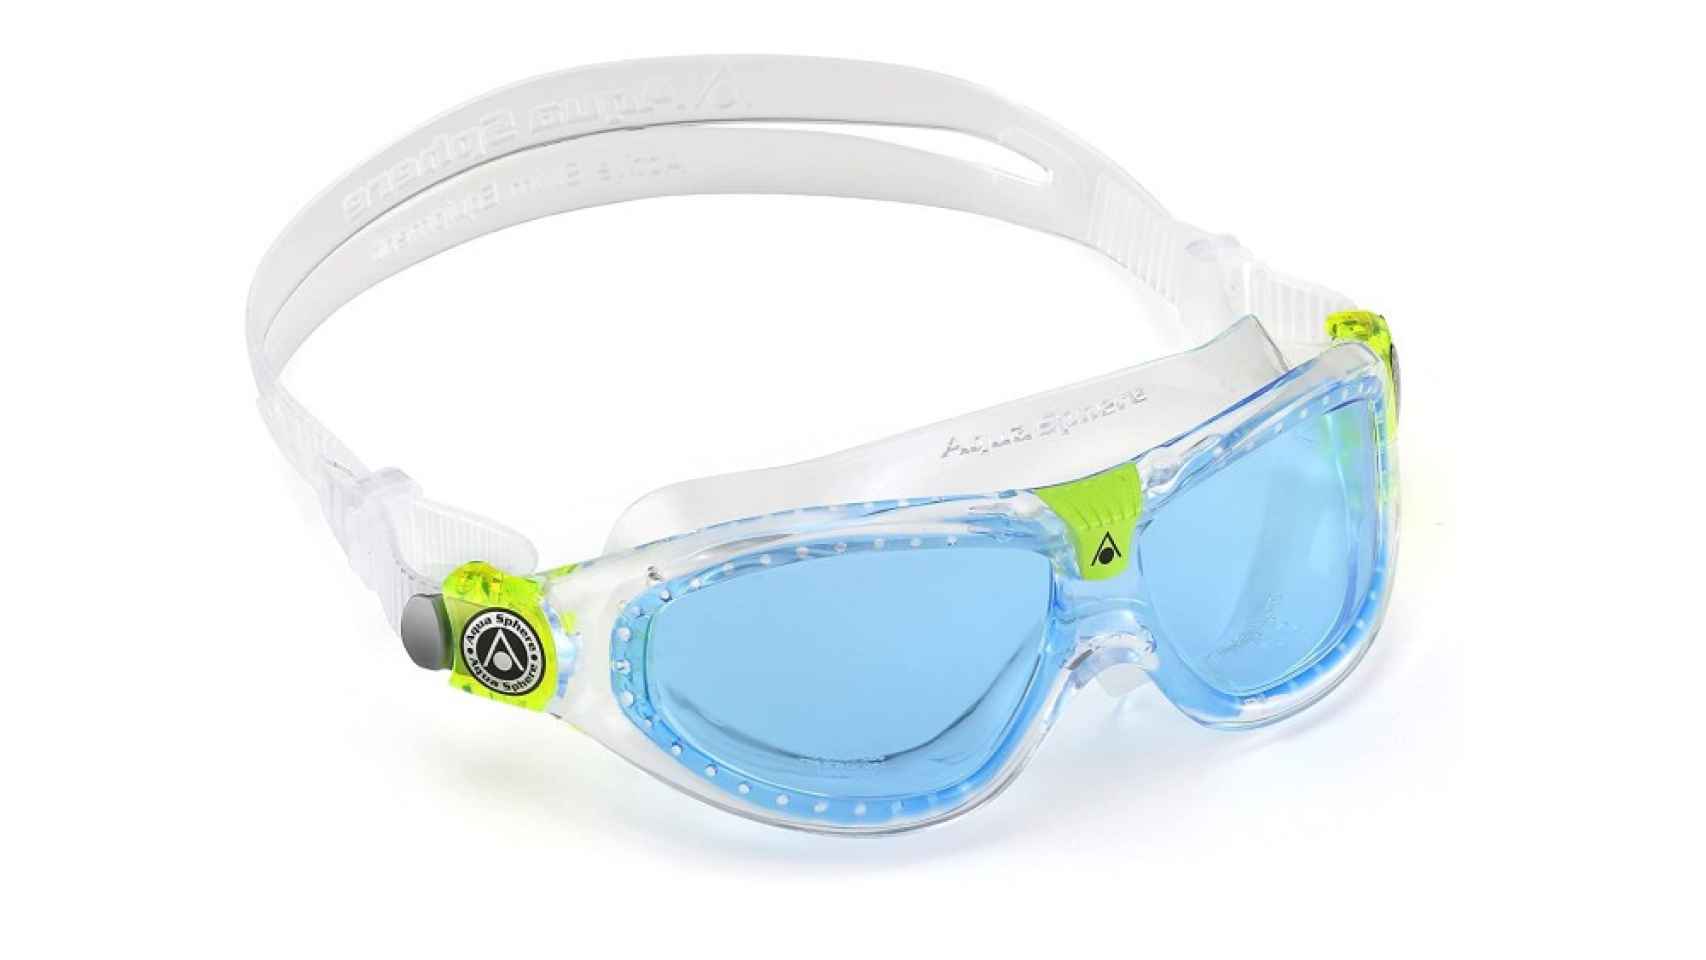 Gafas de natación Seal Kid 2 de Aquasphere